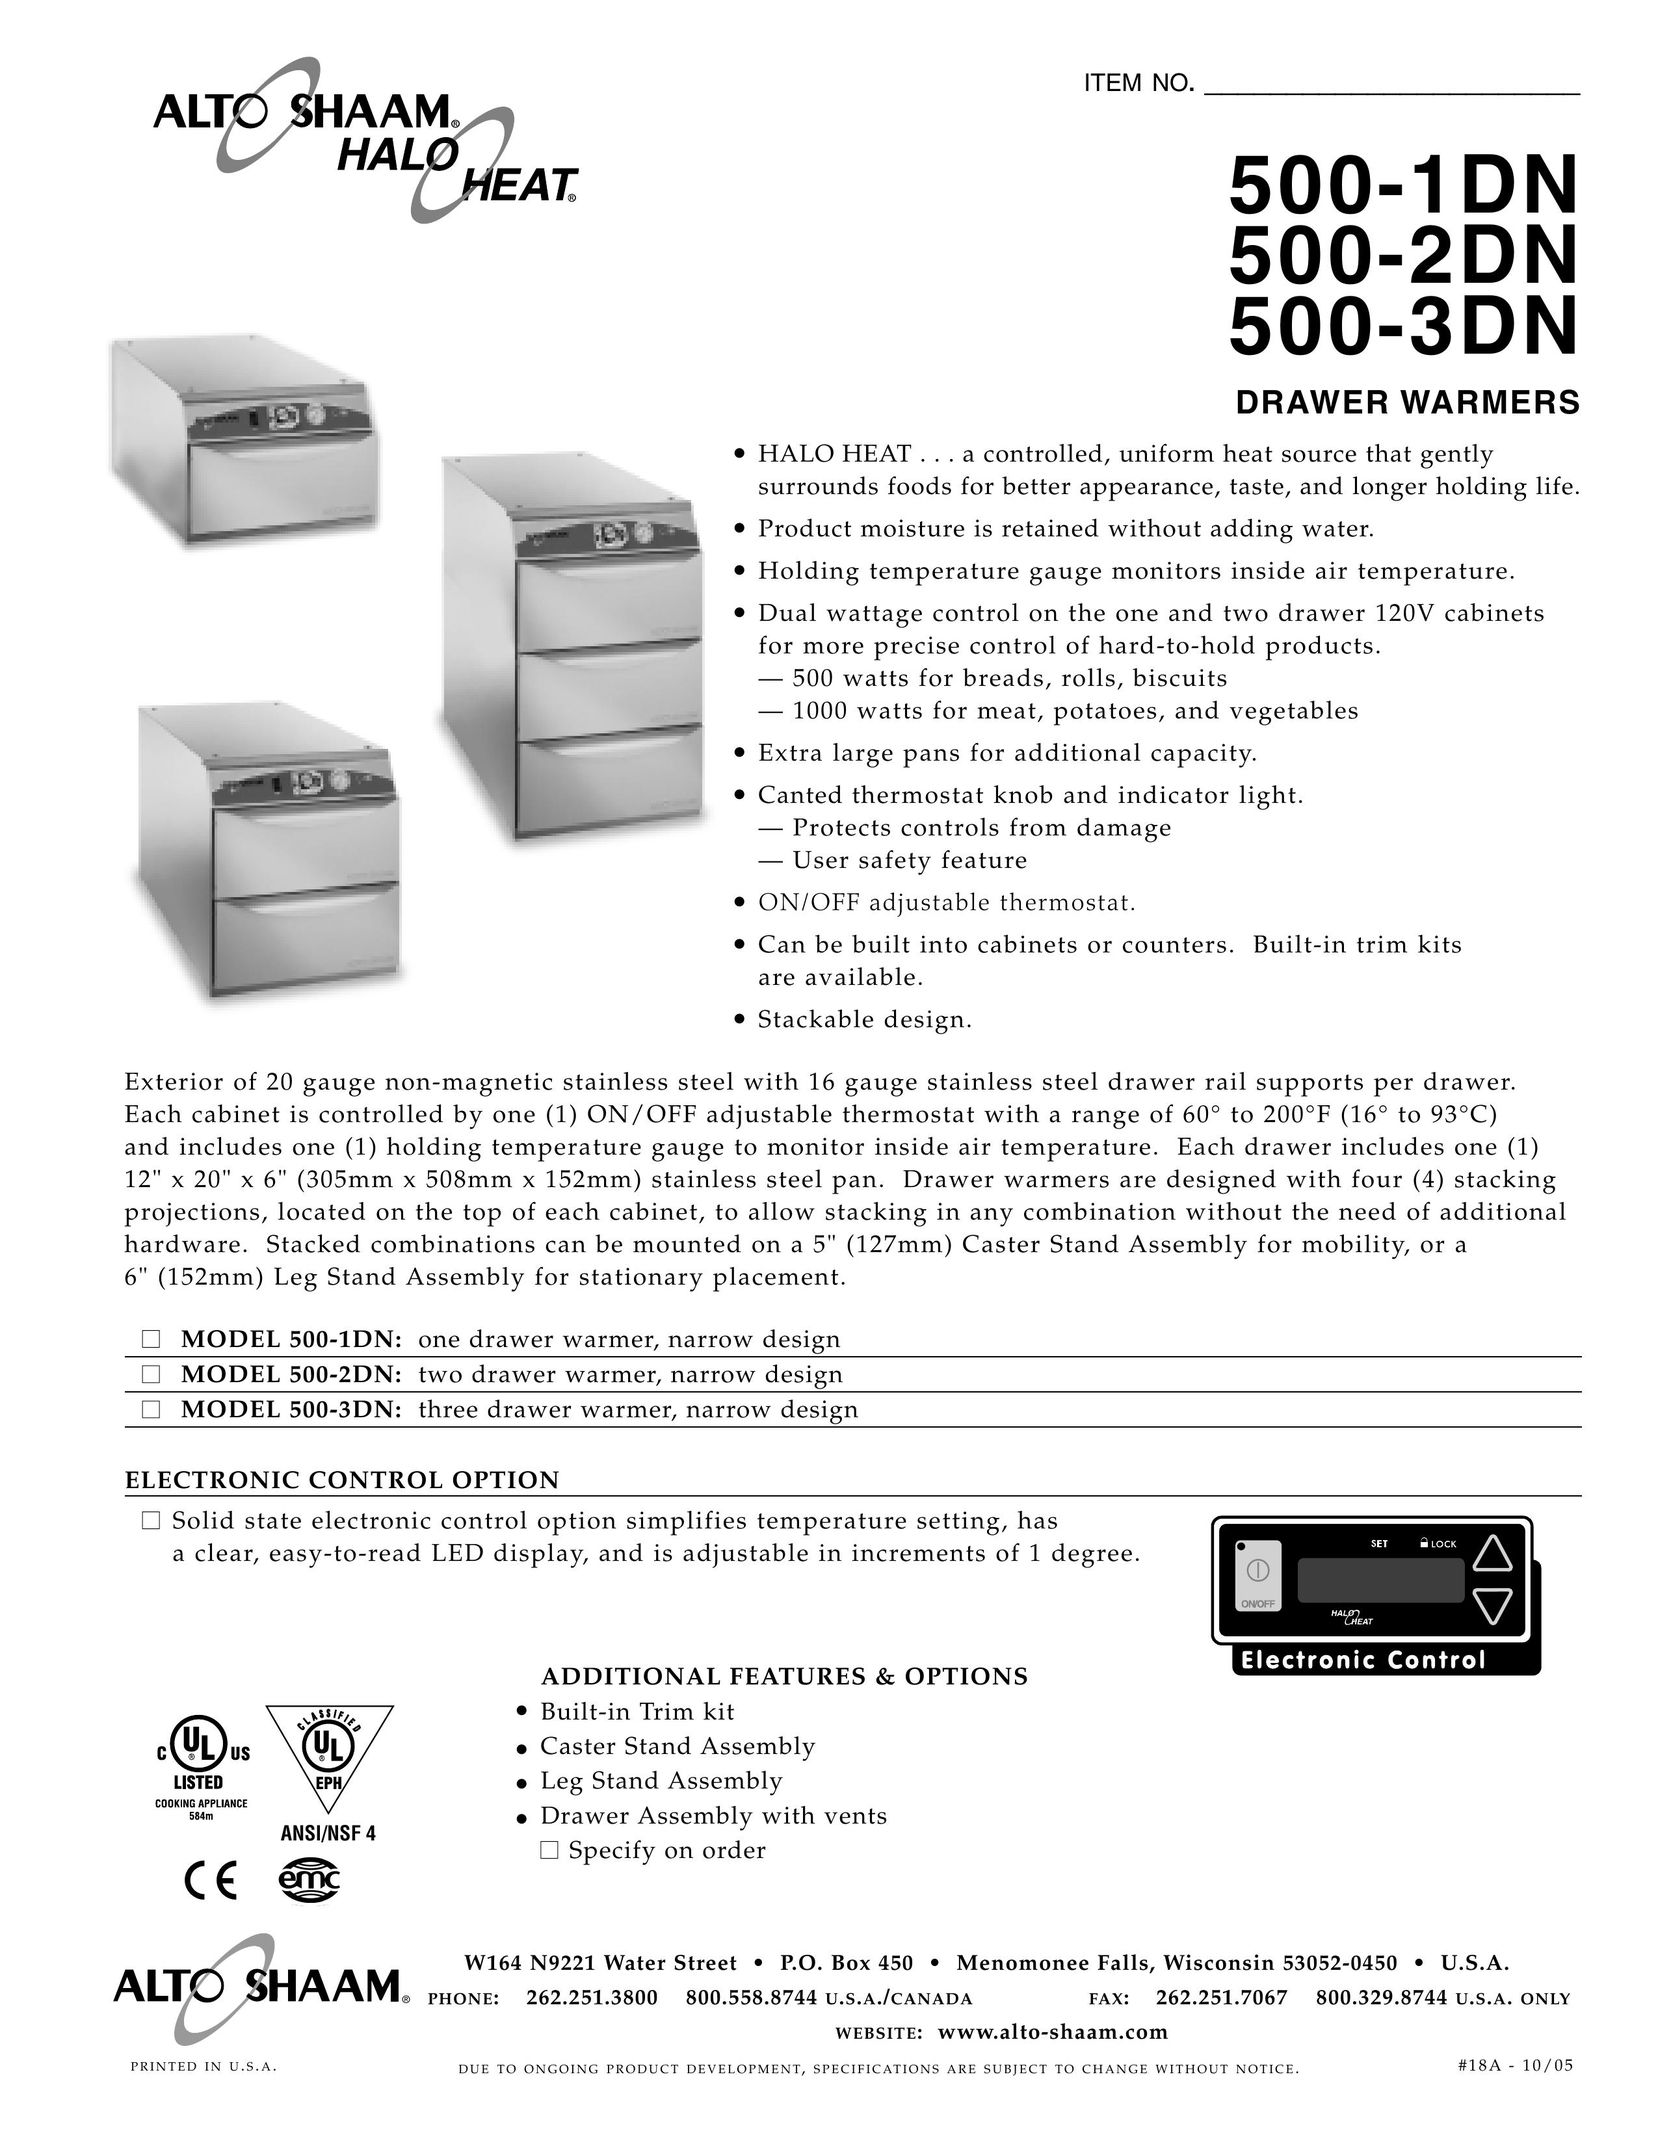 Alto-Shaam 500-1DN Food Warmer User Manual